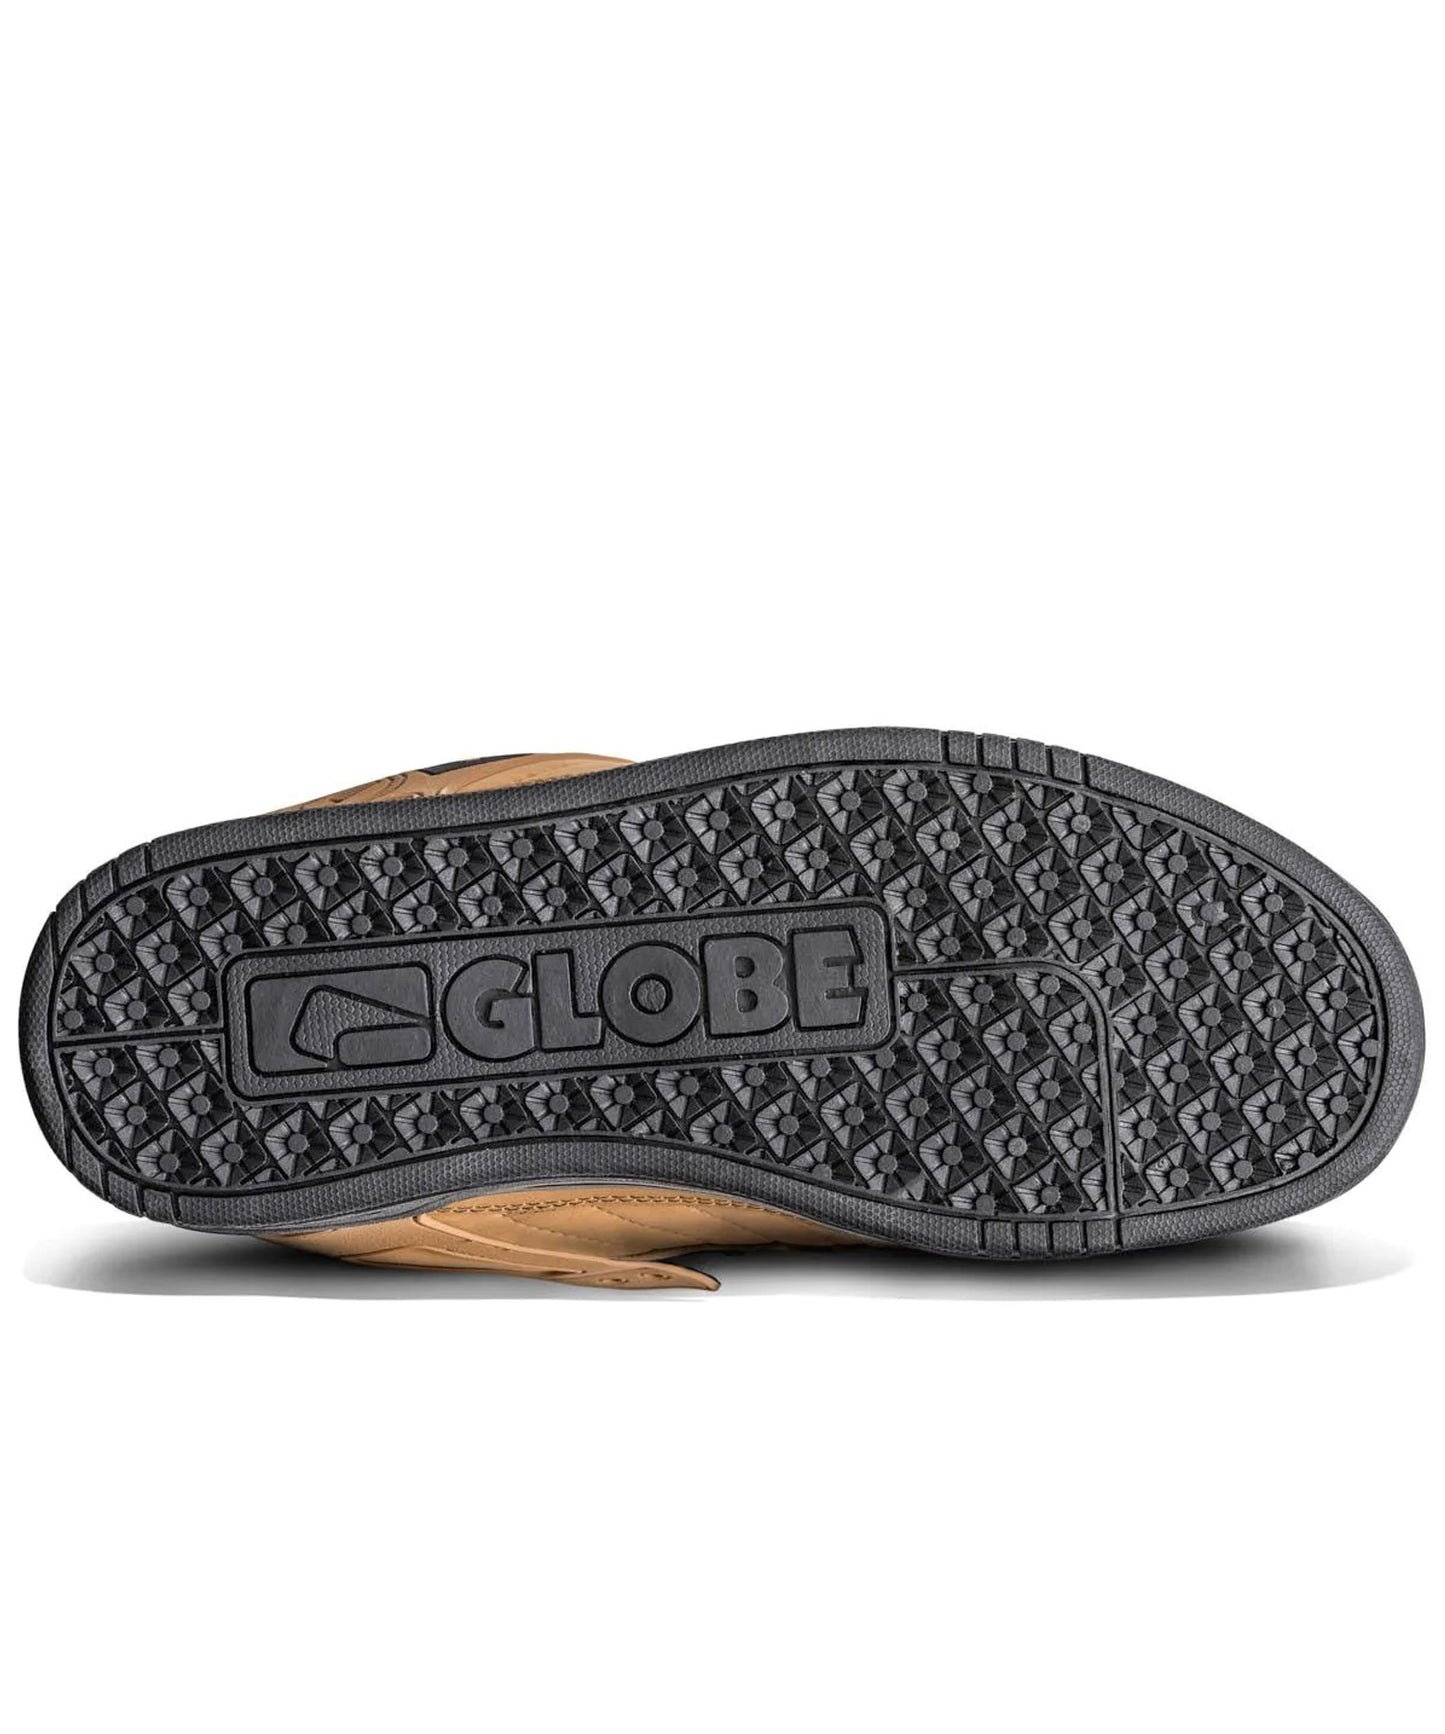 globe-zapatillas-tilt-wheat-black-winter-totalmente-acolchado-color mostaza-suela de copa-zapatilla duradera-calidad-globe.